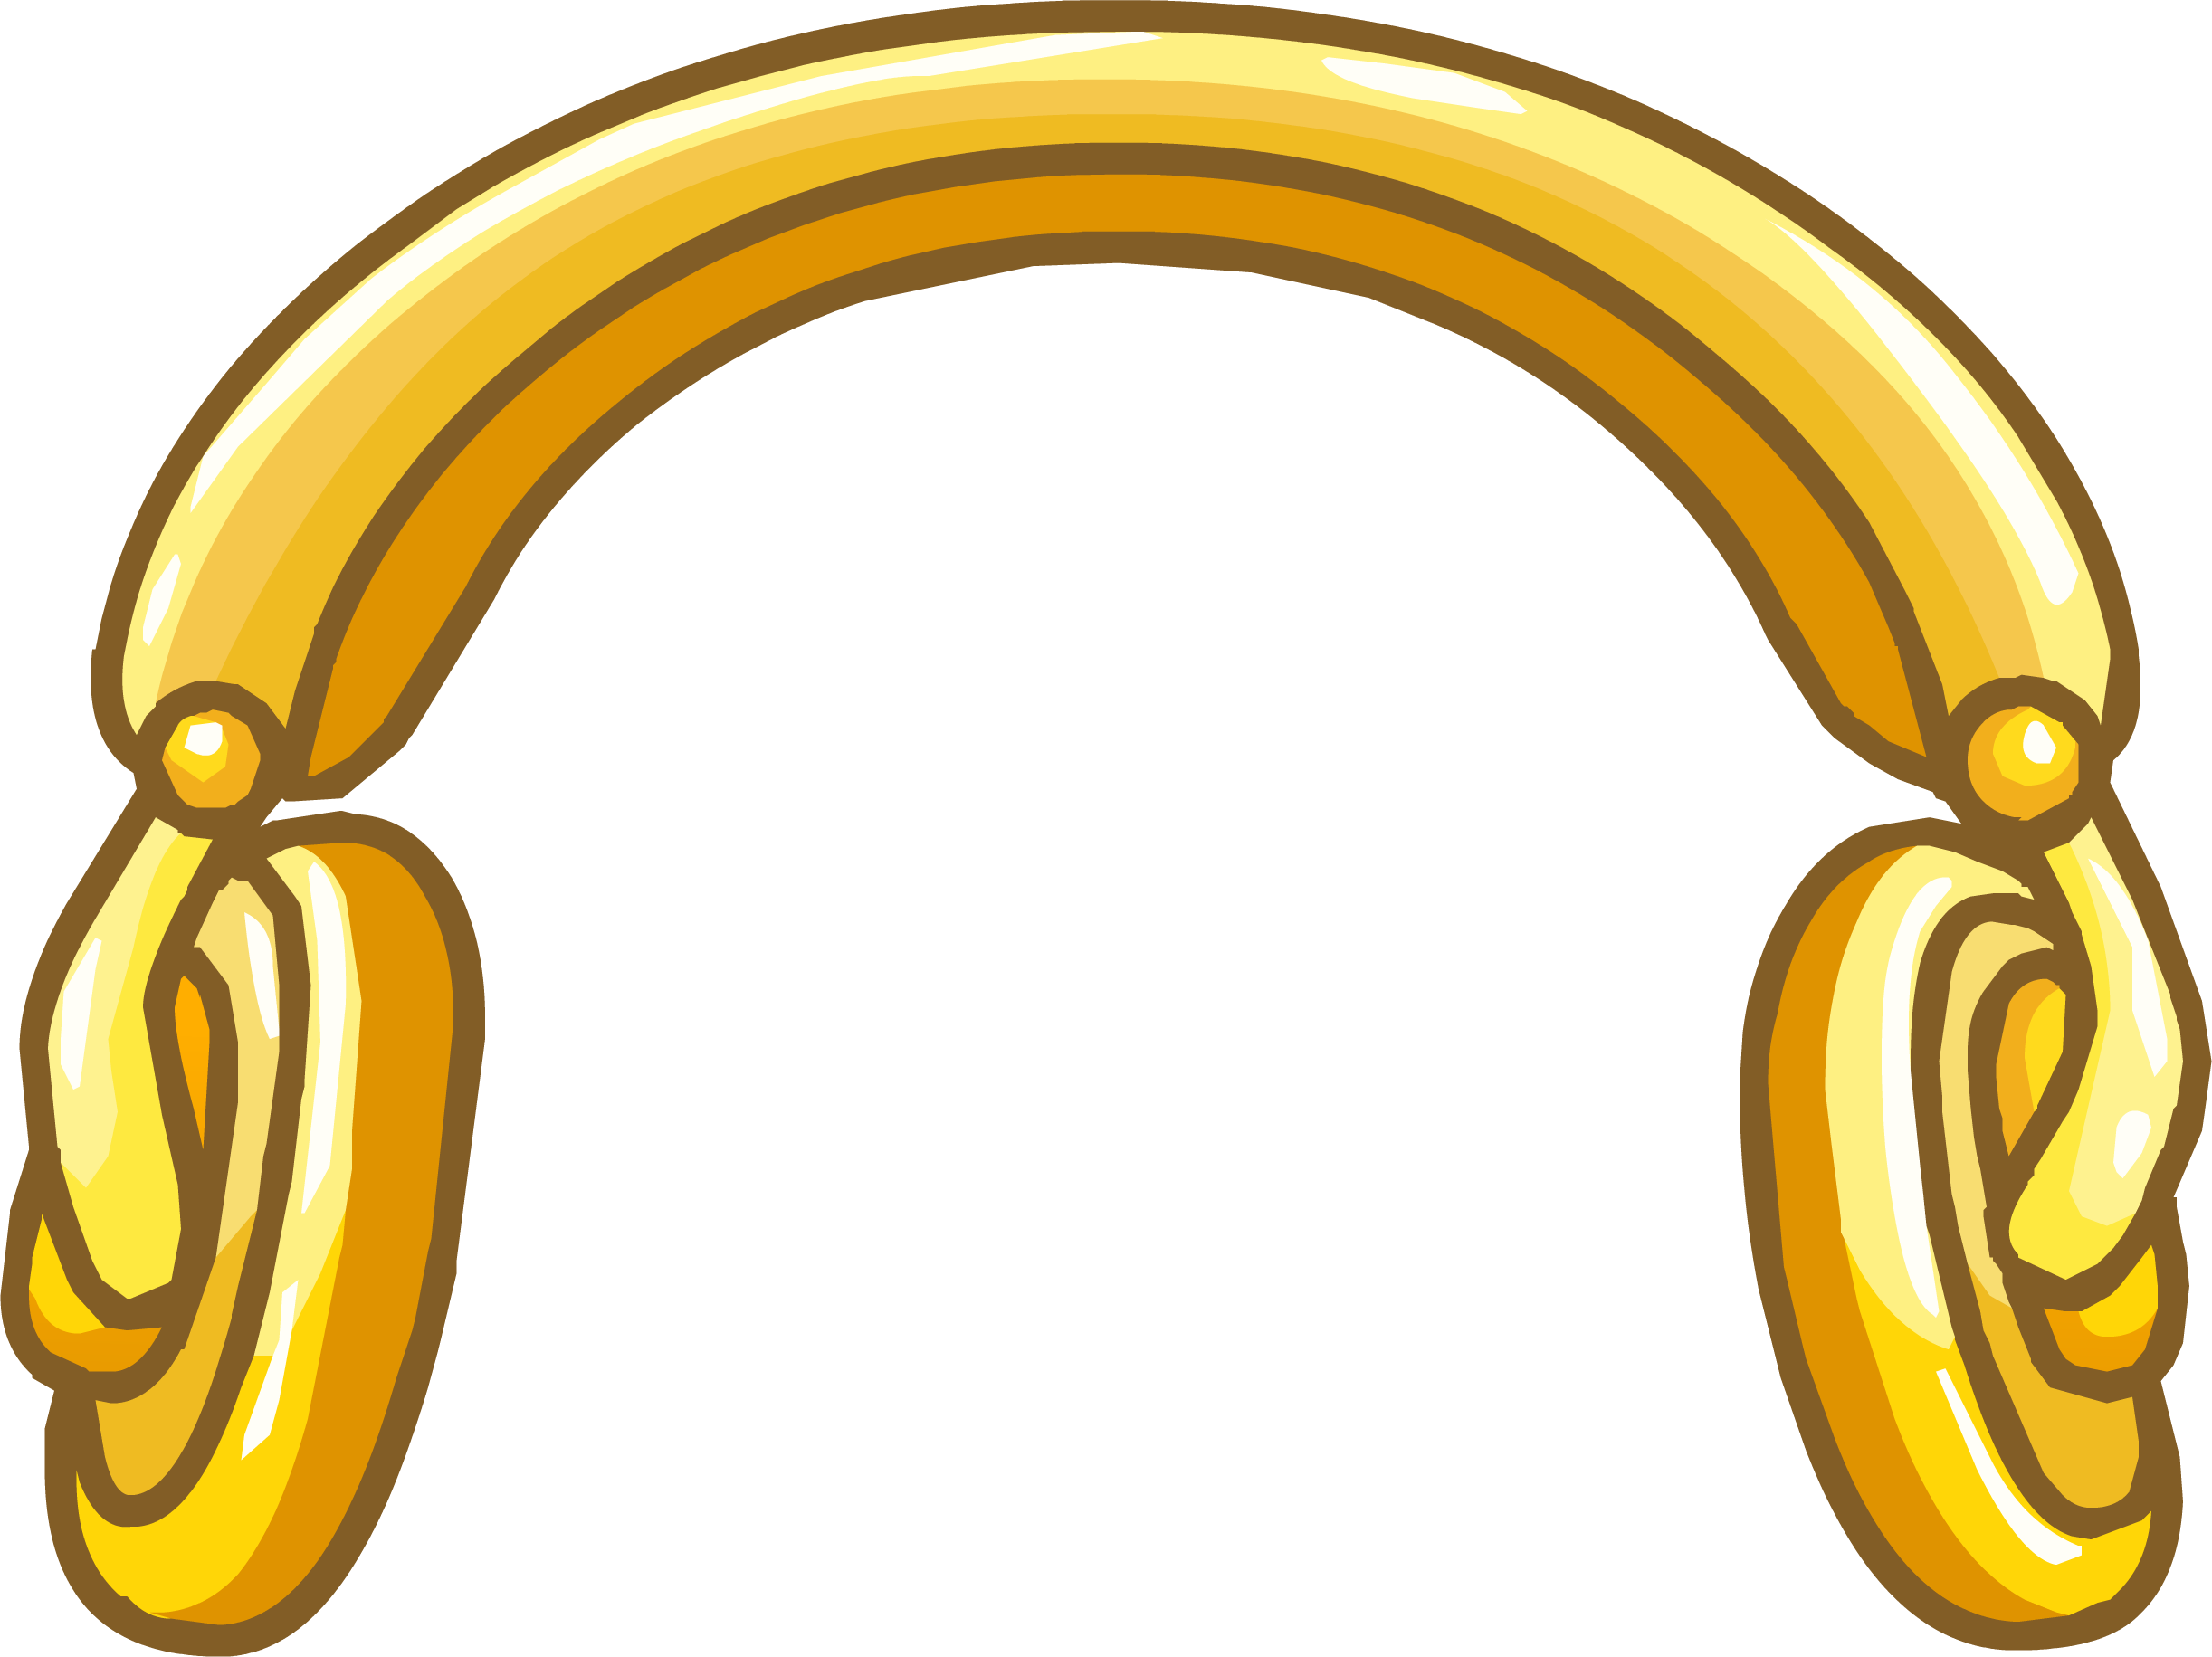 Golden Headphones - Club Penguin Gold Items (2444x1831)